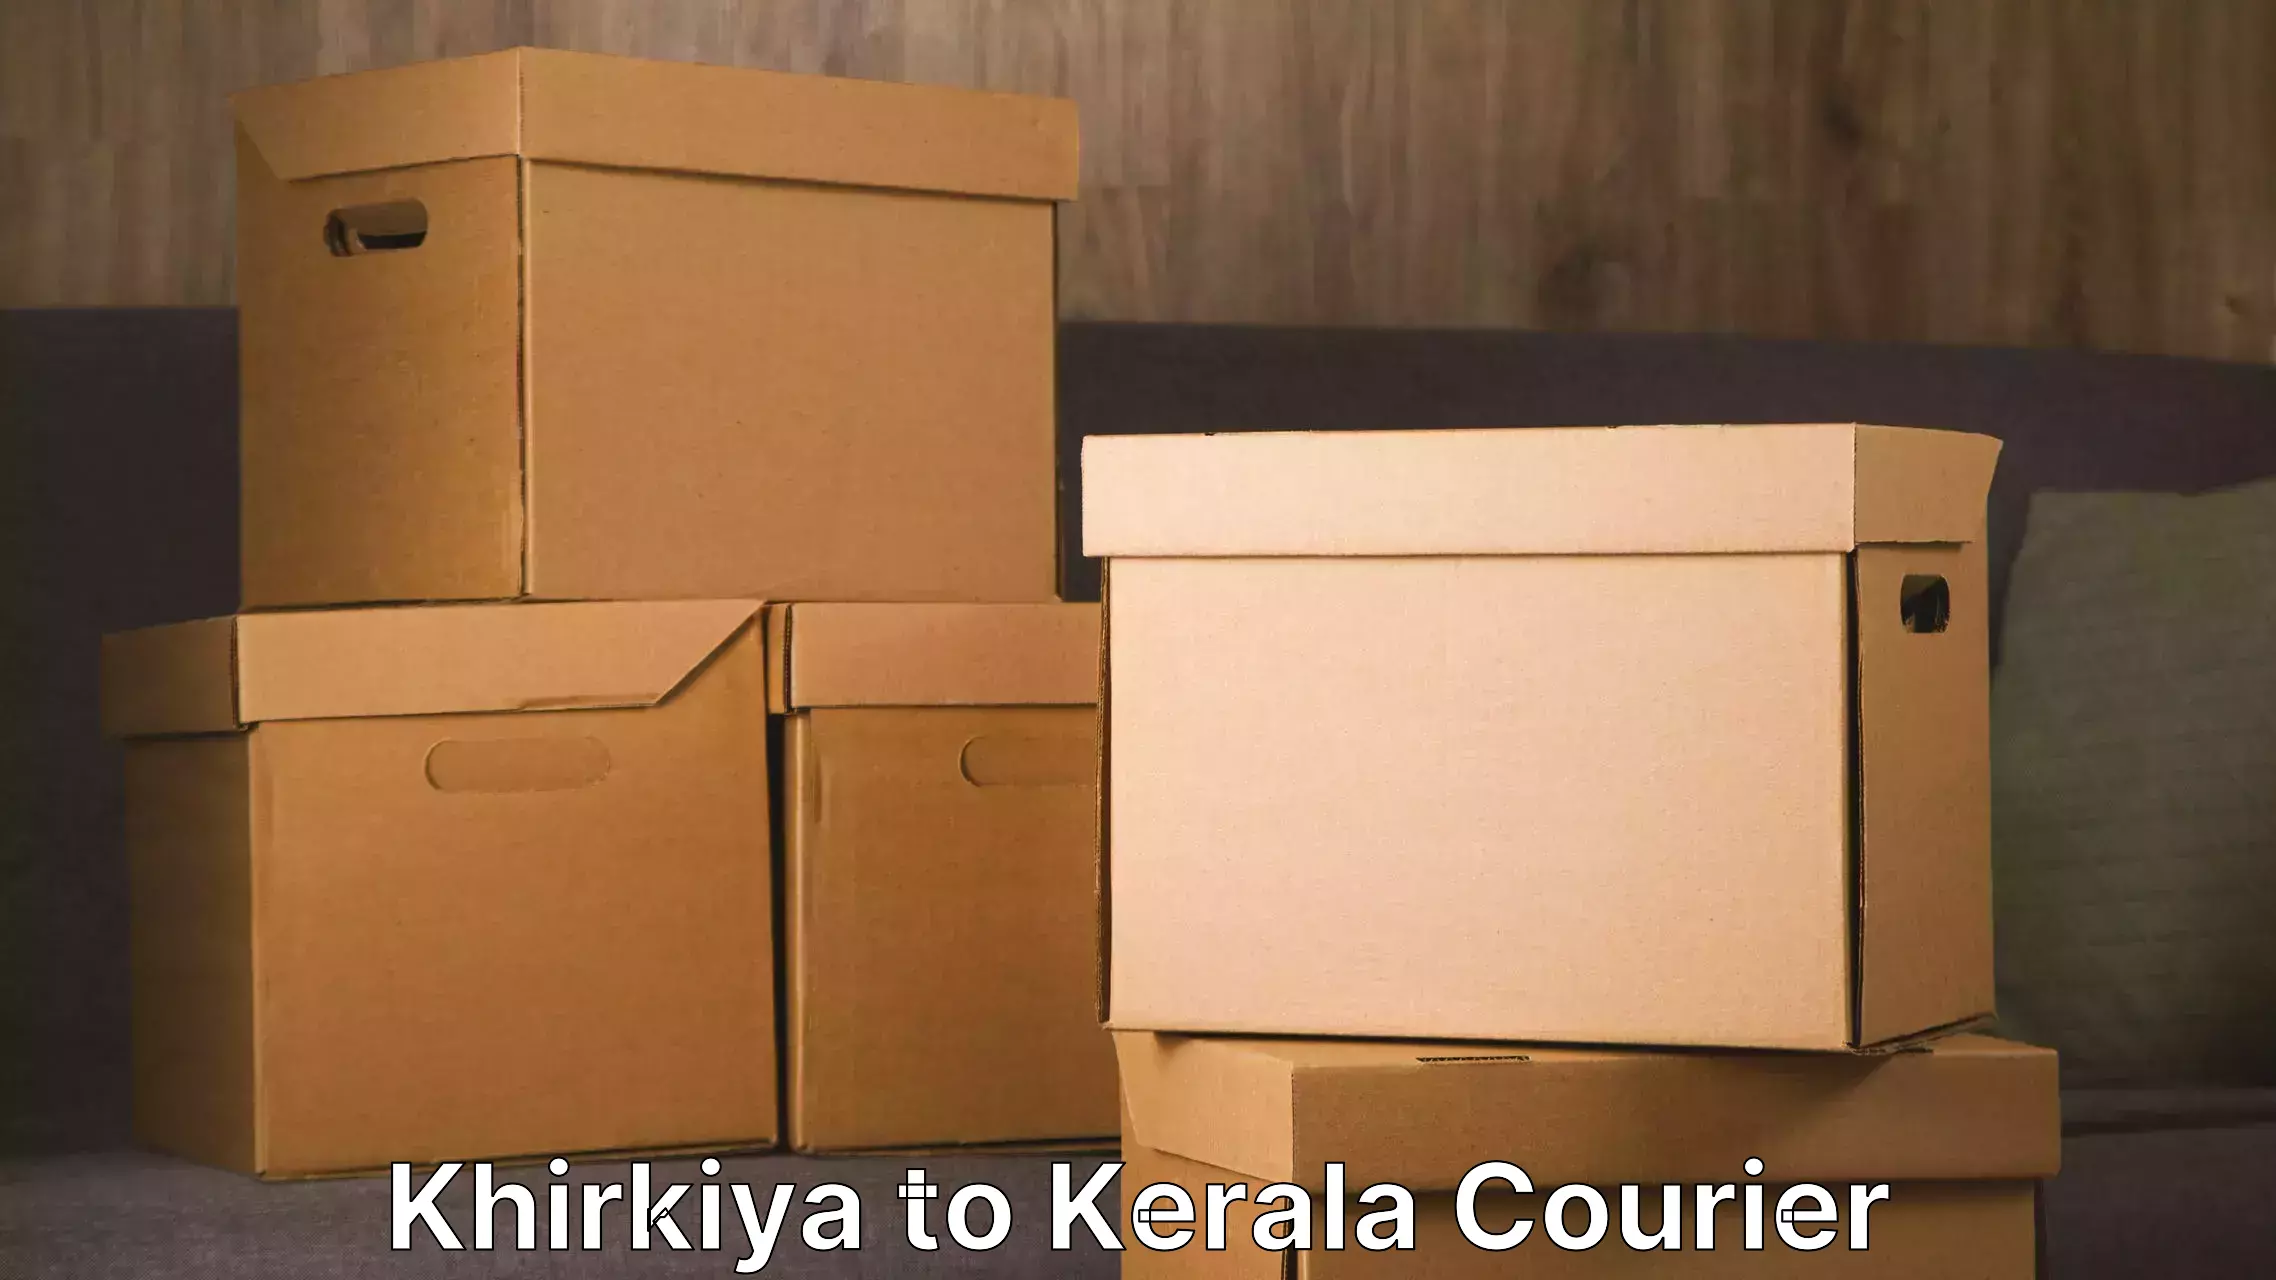 Residential moving experts Khirkiya to Kerala